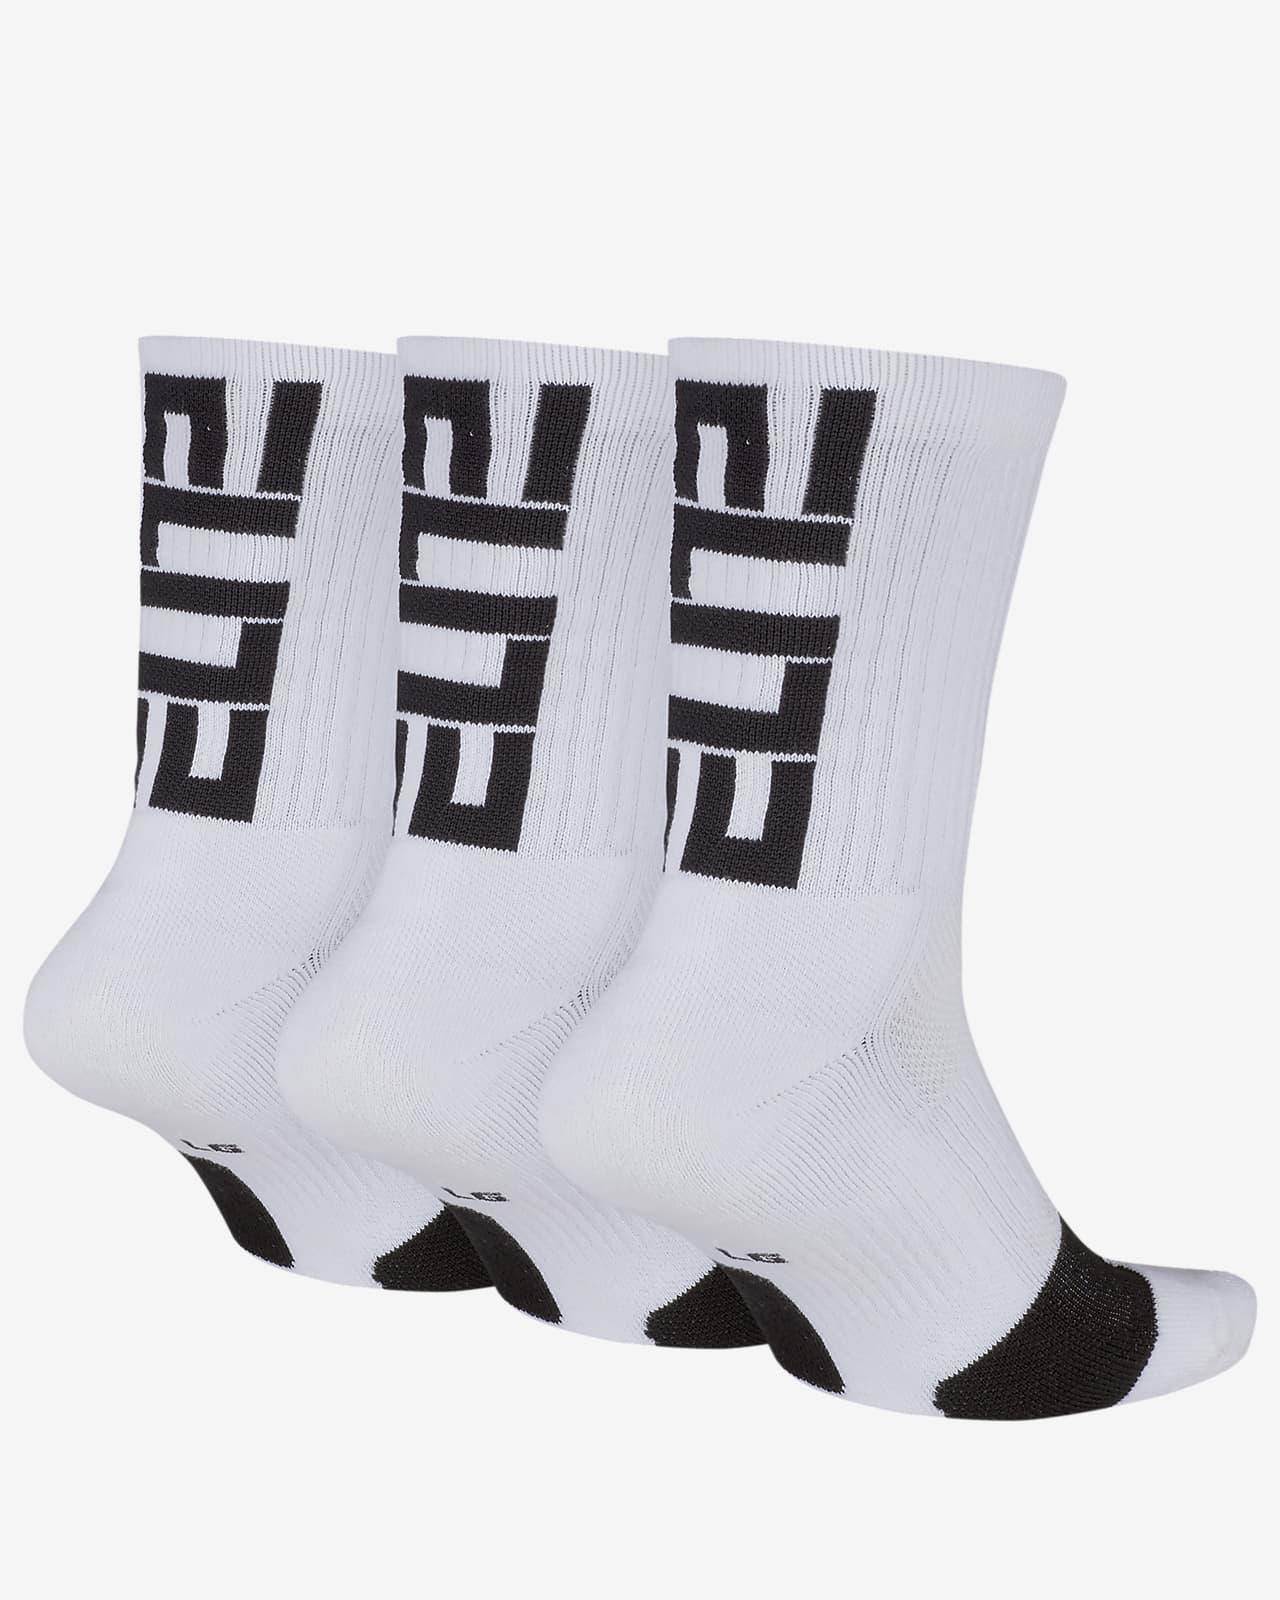 nike elite crew team socks